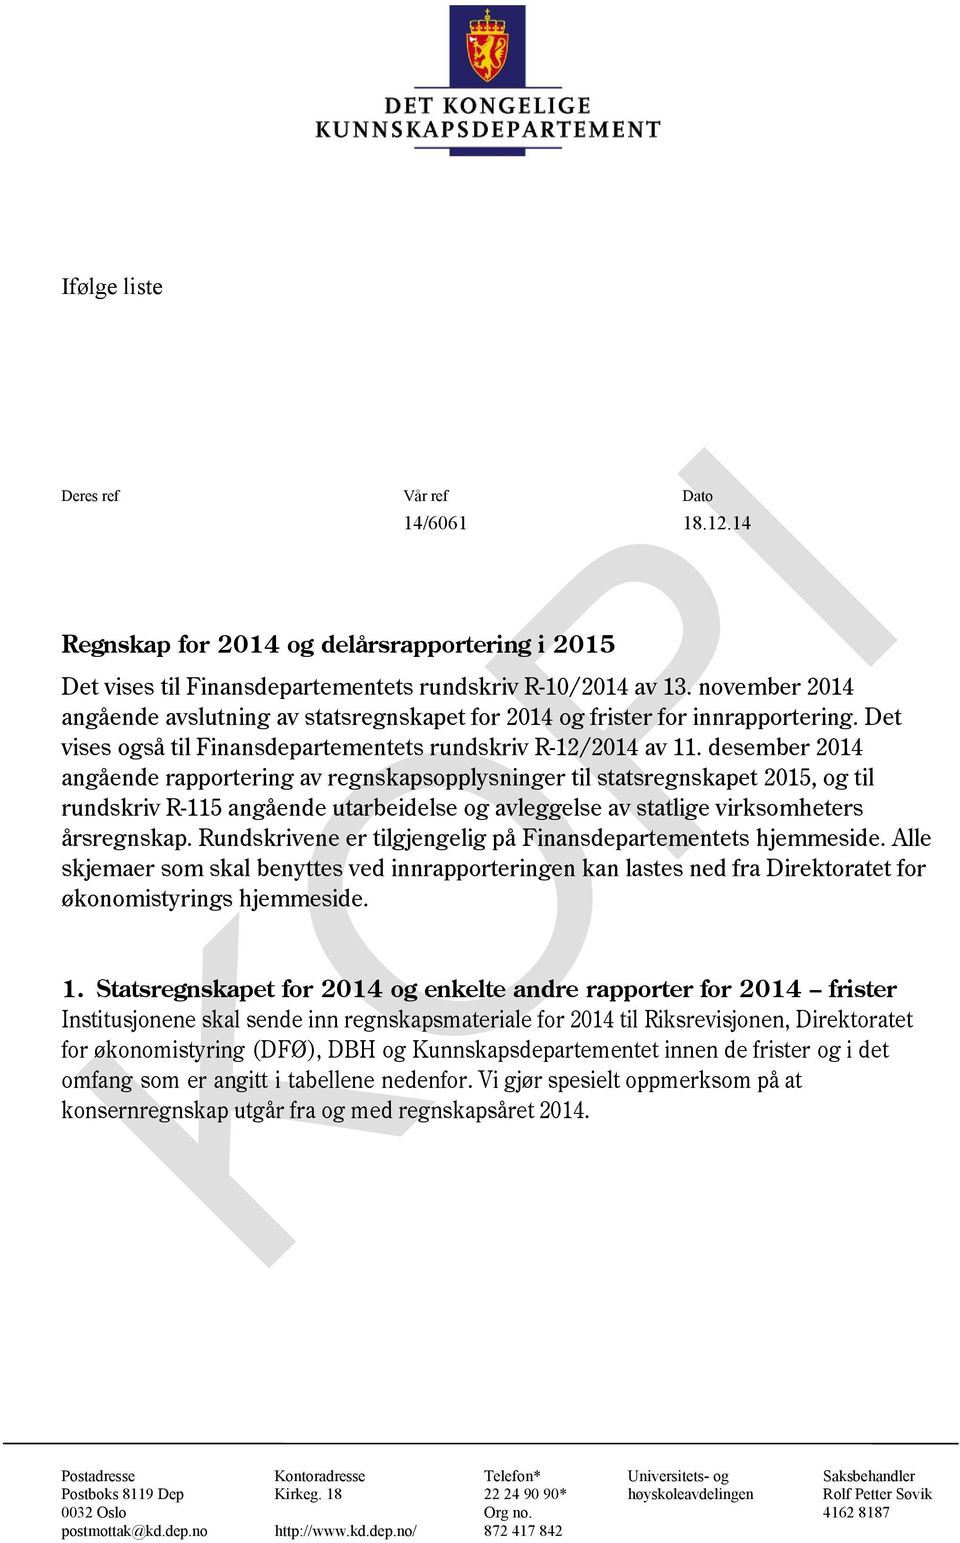 desember 2014 angående rapportering av regnskapsopplysninger til statsregnskapet, og til rundskriv R-115 angående utarbeidelse og avleggelse av statlige virksomheters årsregnskap.